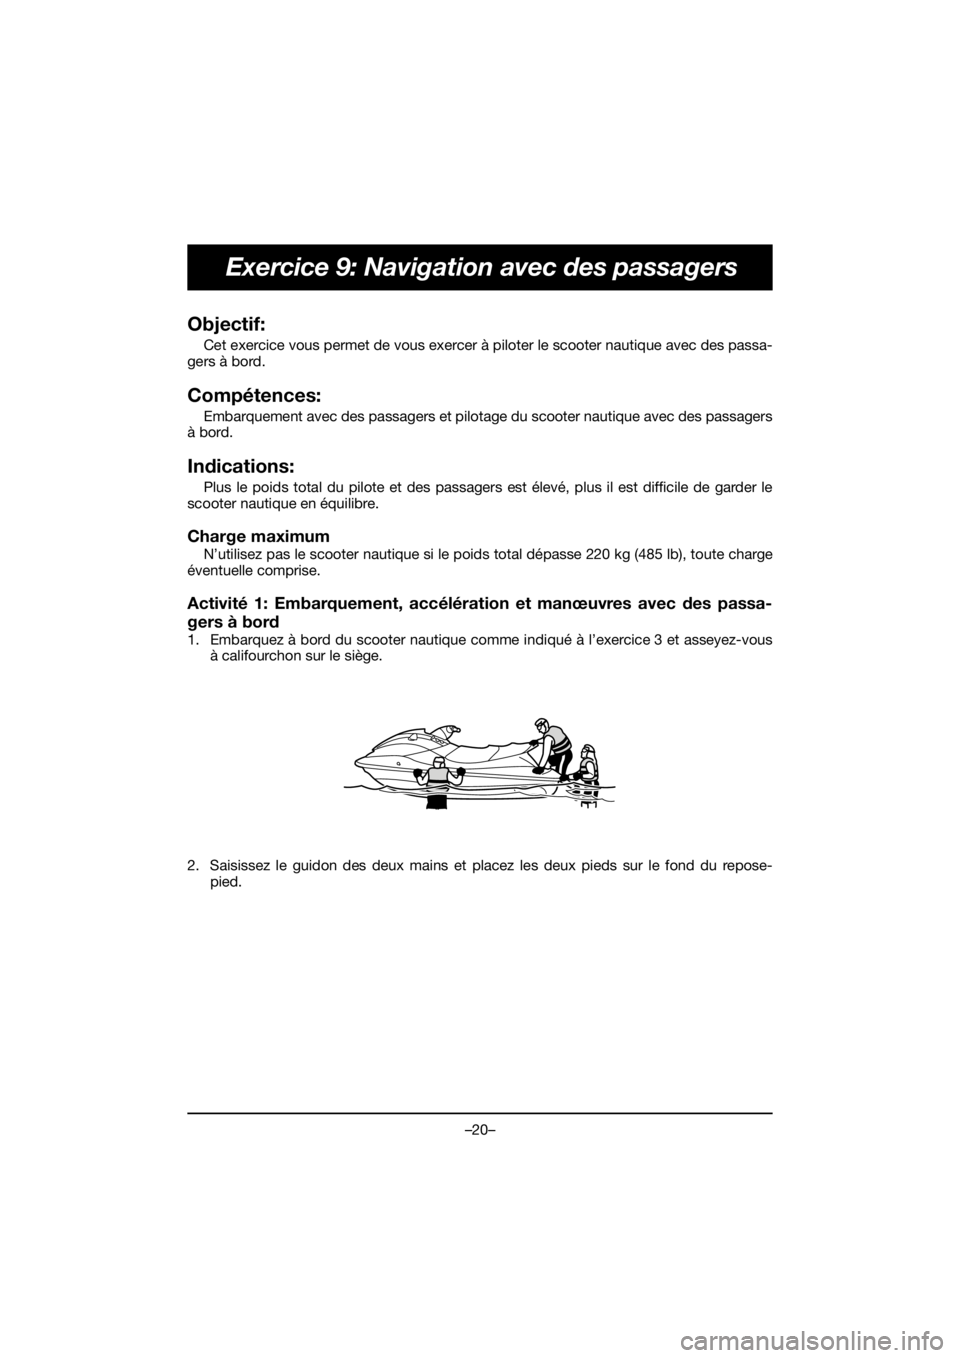 YAMAHA FJR1300 2019 Service Manual –20–
Exercice 9: Navigation avec des passagers
Objectif: 
Cet exercice vous permet de vous exercer à piloter le scooter nautique avec des passa-
gers à bord.
Compétences: 
Embarquement avec des